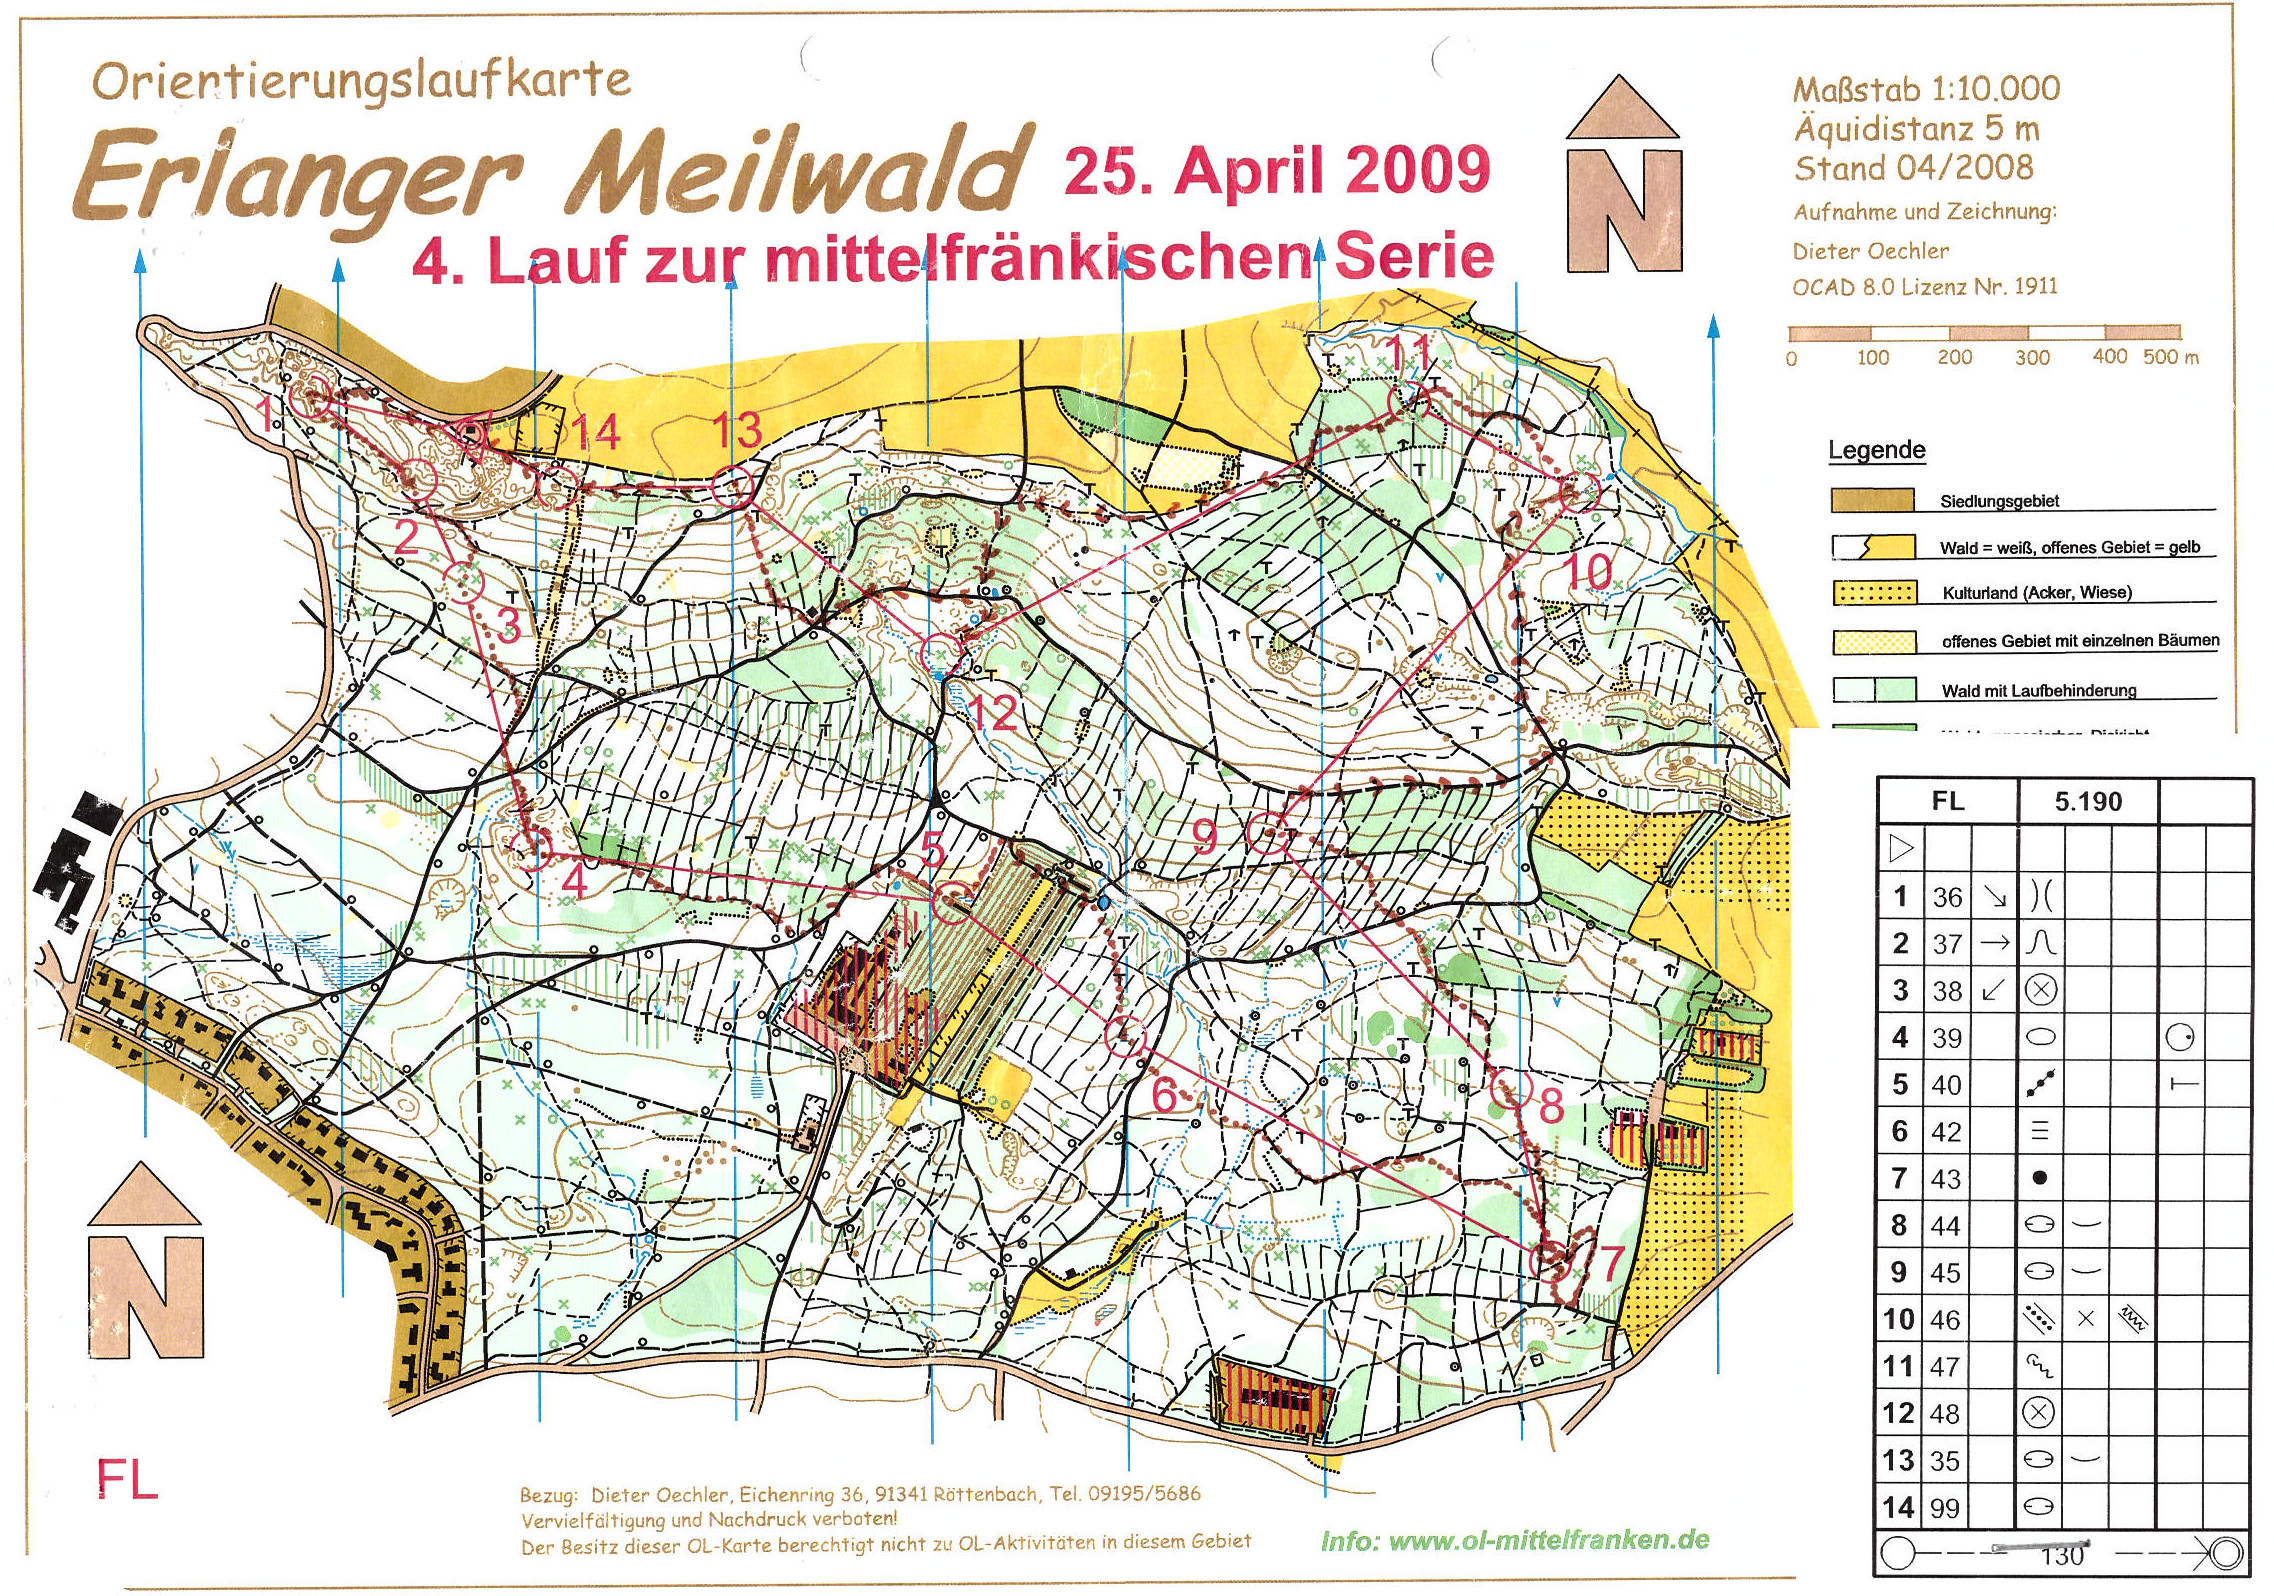 Mittelfranken-Serie 2009 Lauf 3 (2009-04-25)